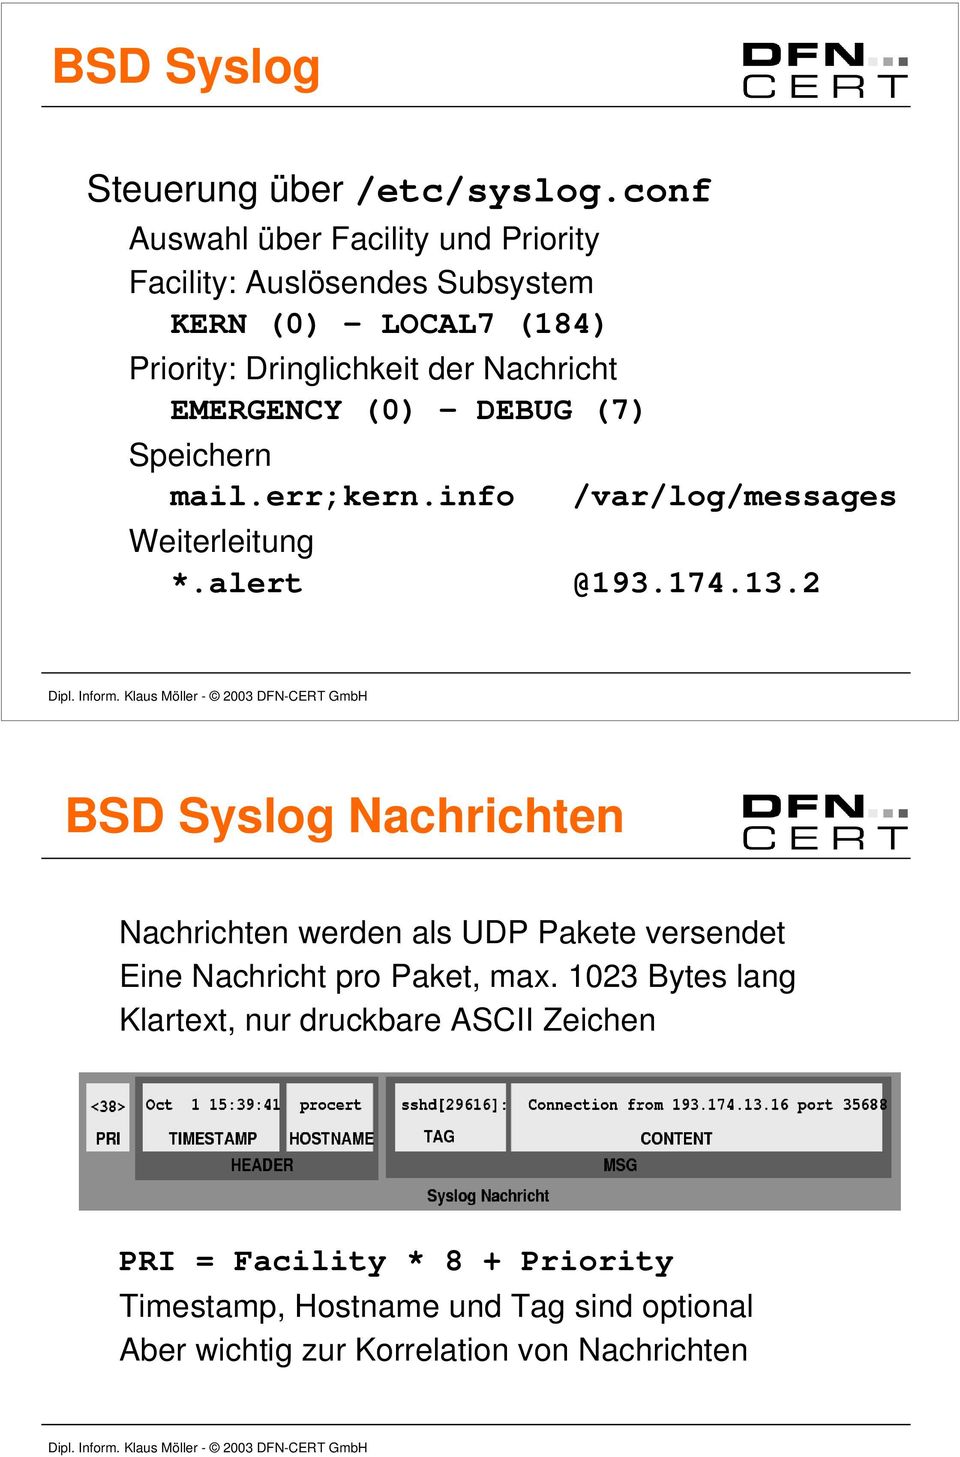 EMERGENCY (0) - DEBUG (7) Speichern mail.err;kern.info /var/log/messages Weiterleitung *.alert @193.174.13.